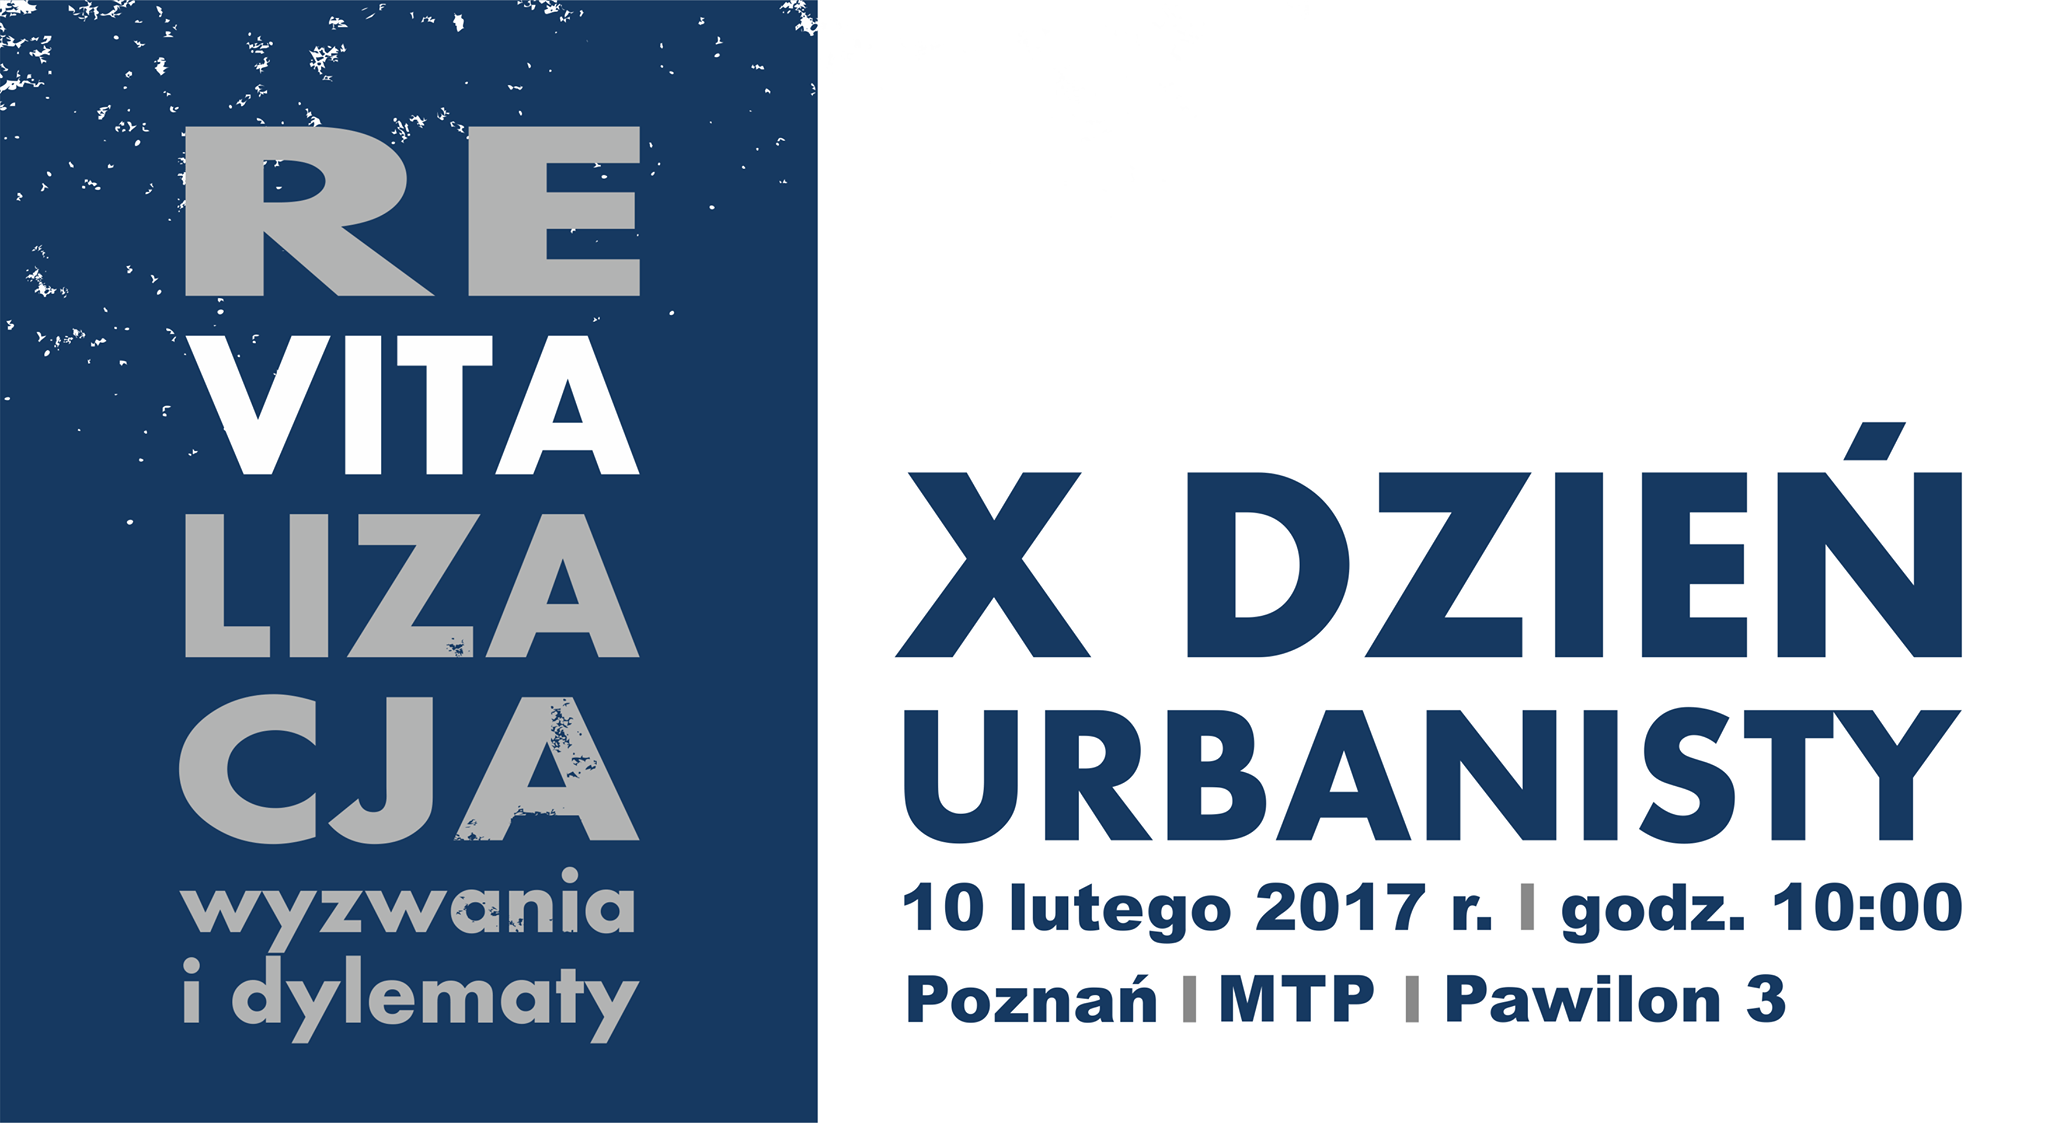 X dzień urbanisty 2017